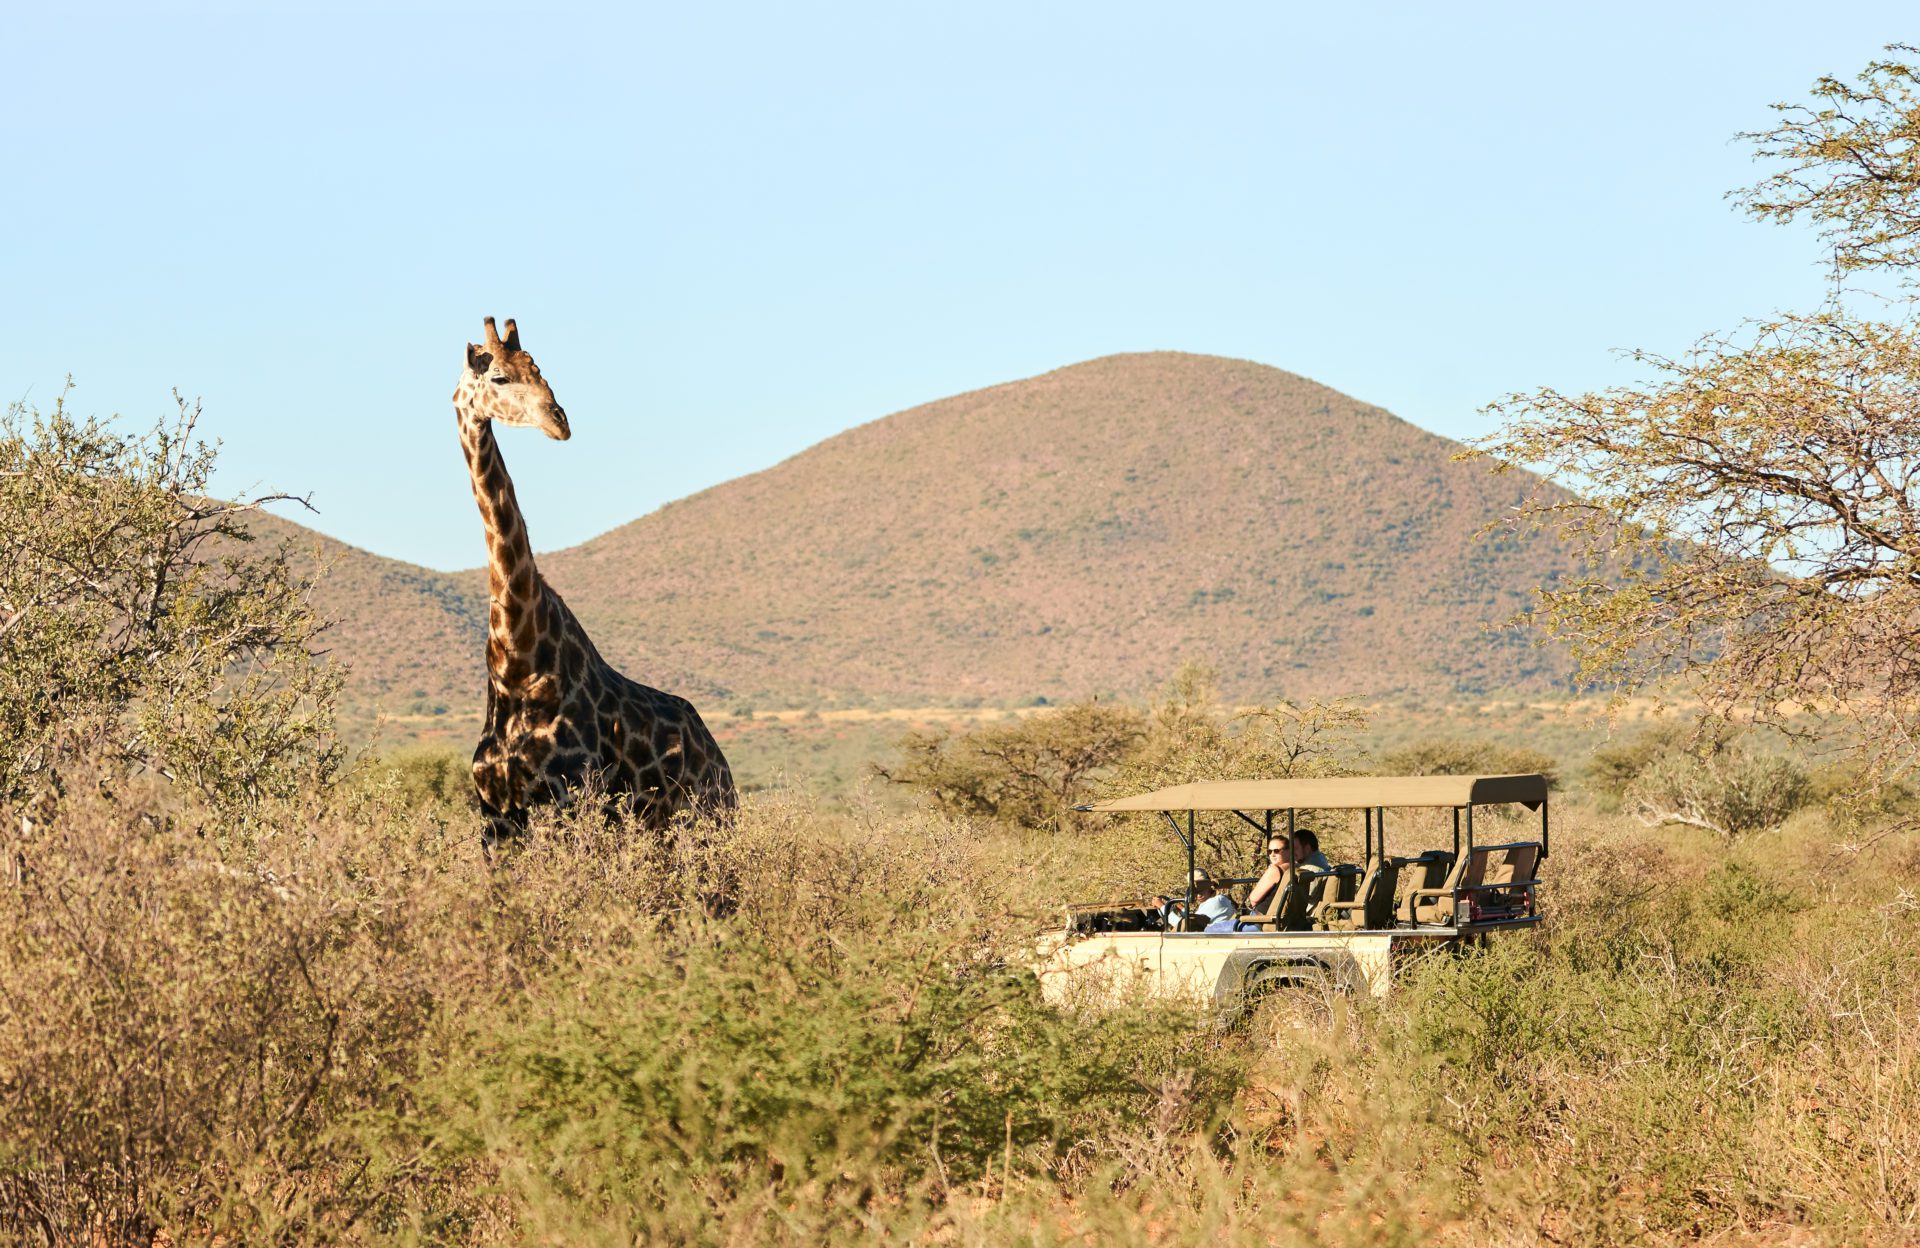 Tswalu kalahari safari